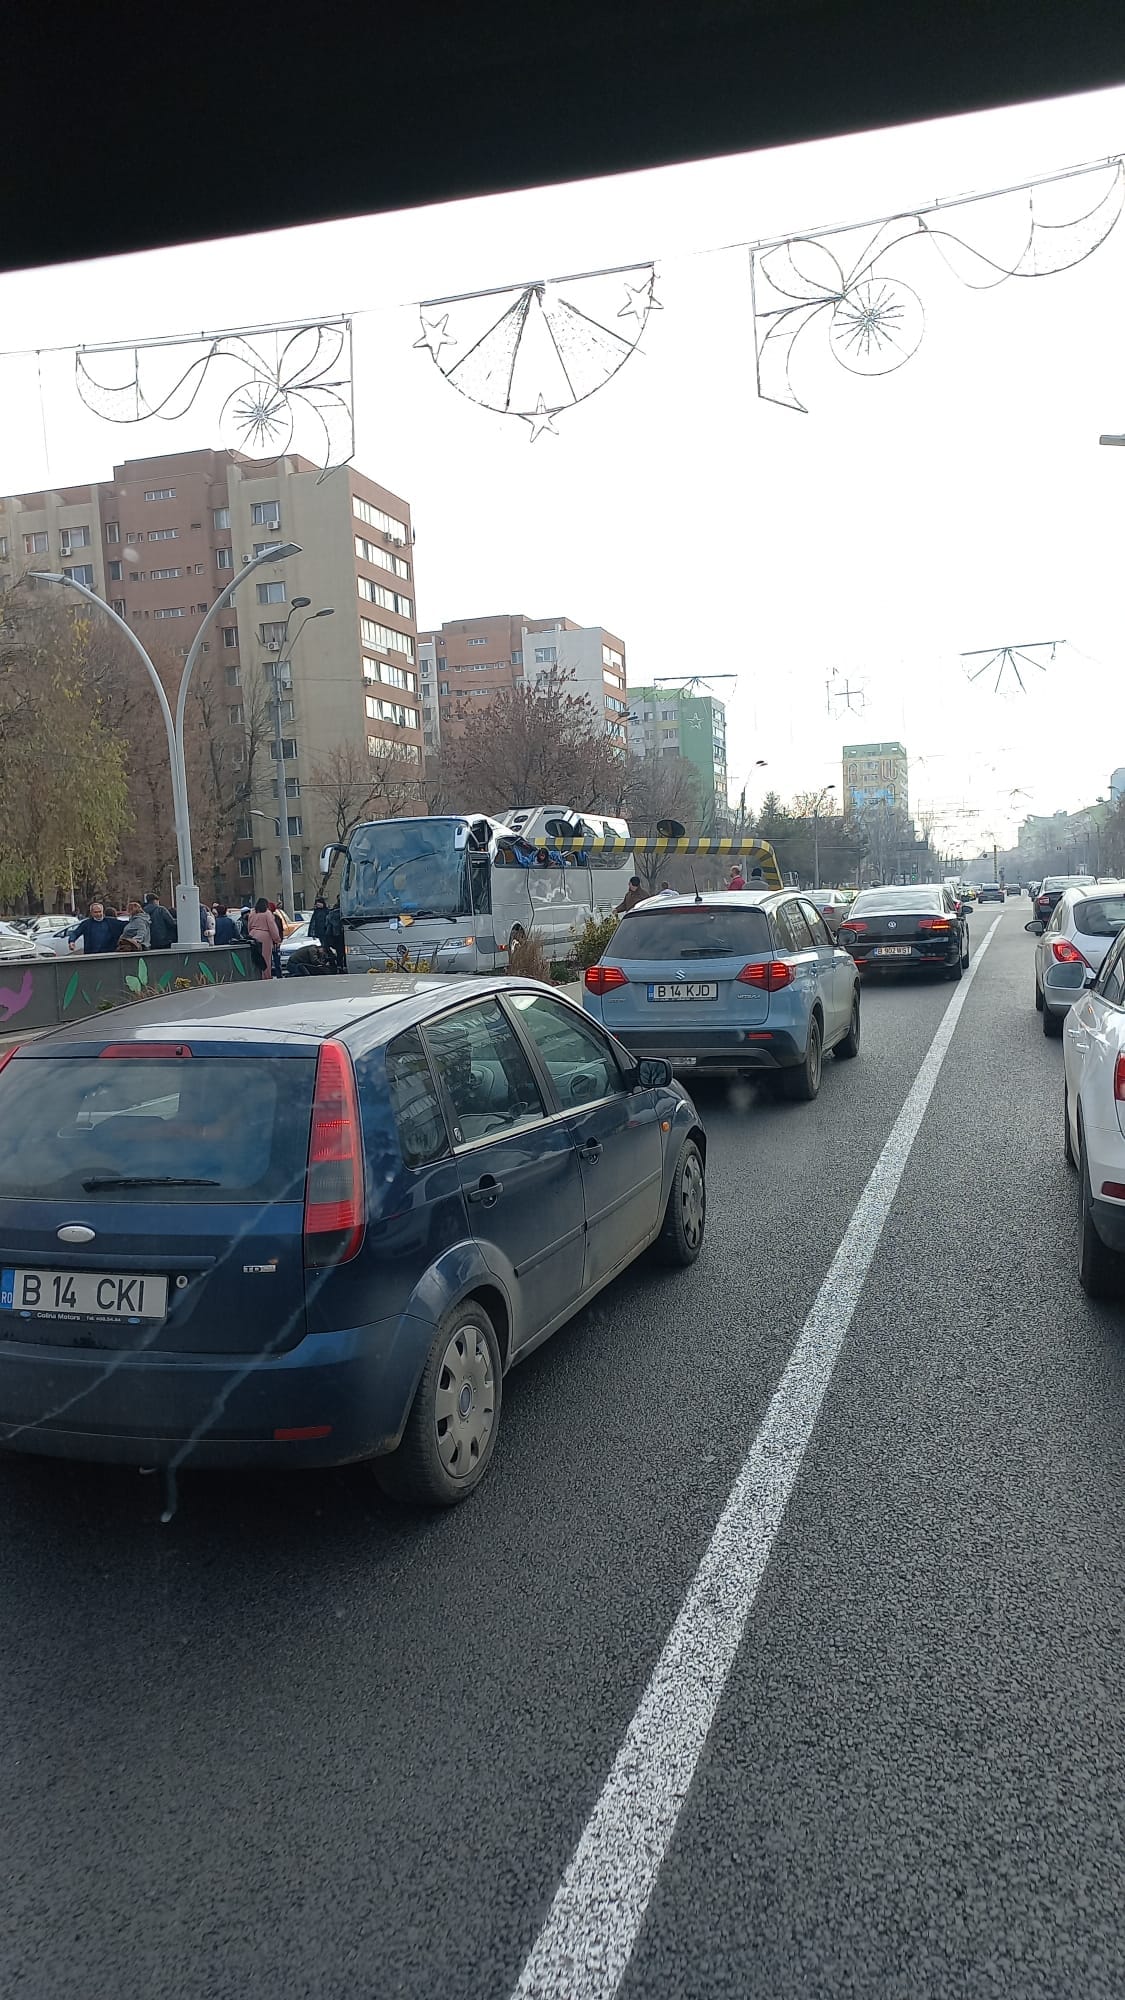 troxaio voukouresti 1 - Τροχαίο-σοκ στη Ρουμανία με λεωφορείο που μετέφερε 47 Έλληνες - Ένας νεκρός, 23 τραυματίες (εικόνες & βίντεο)